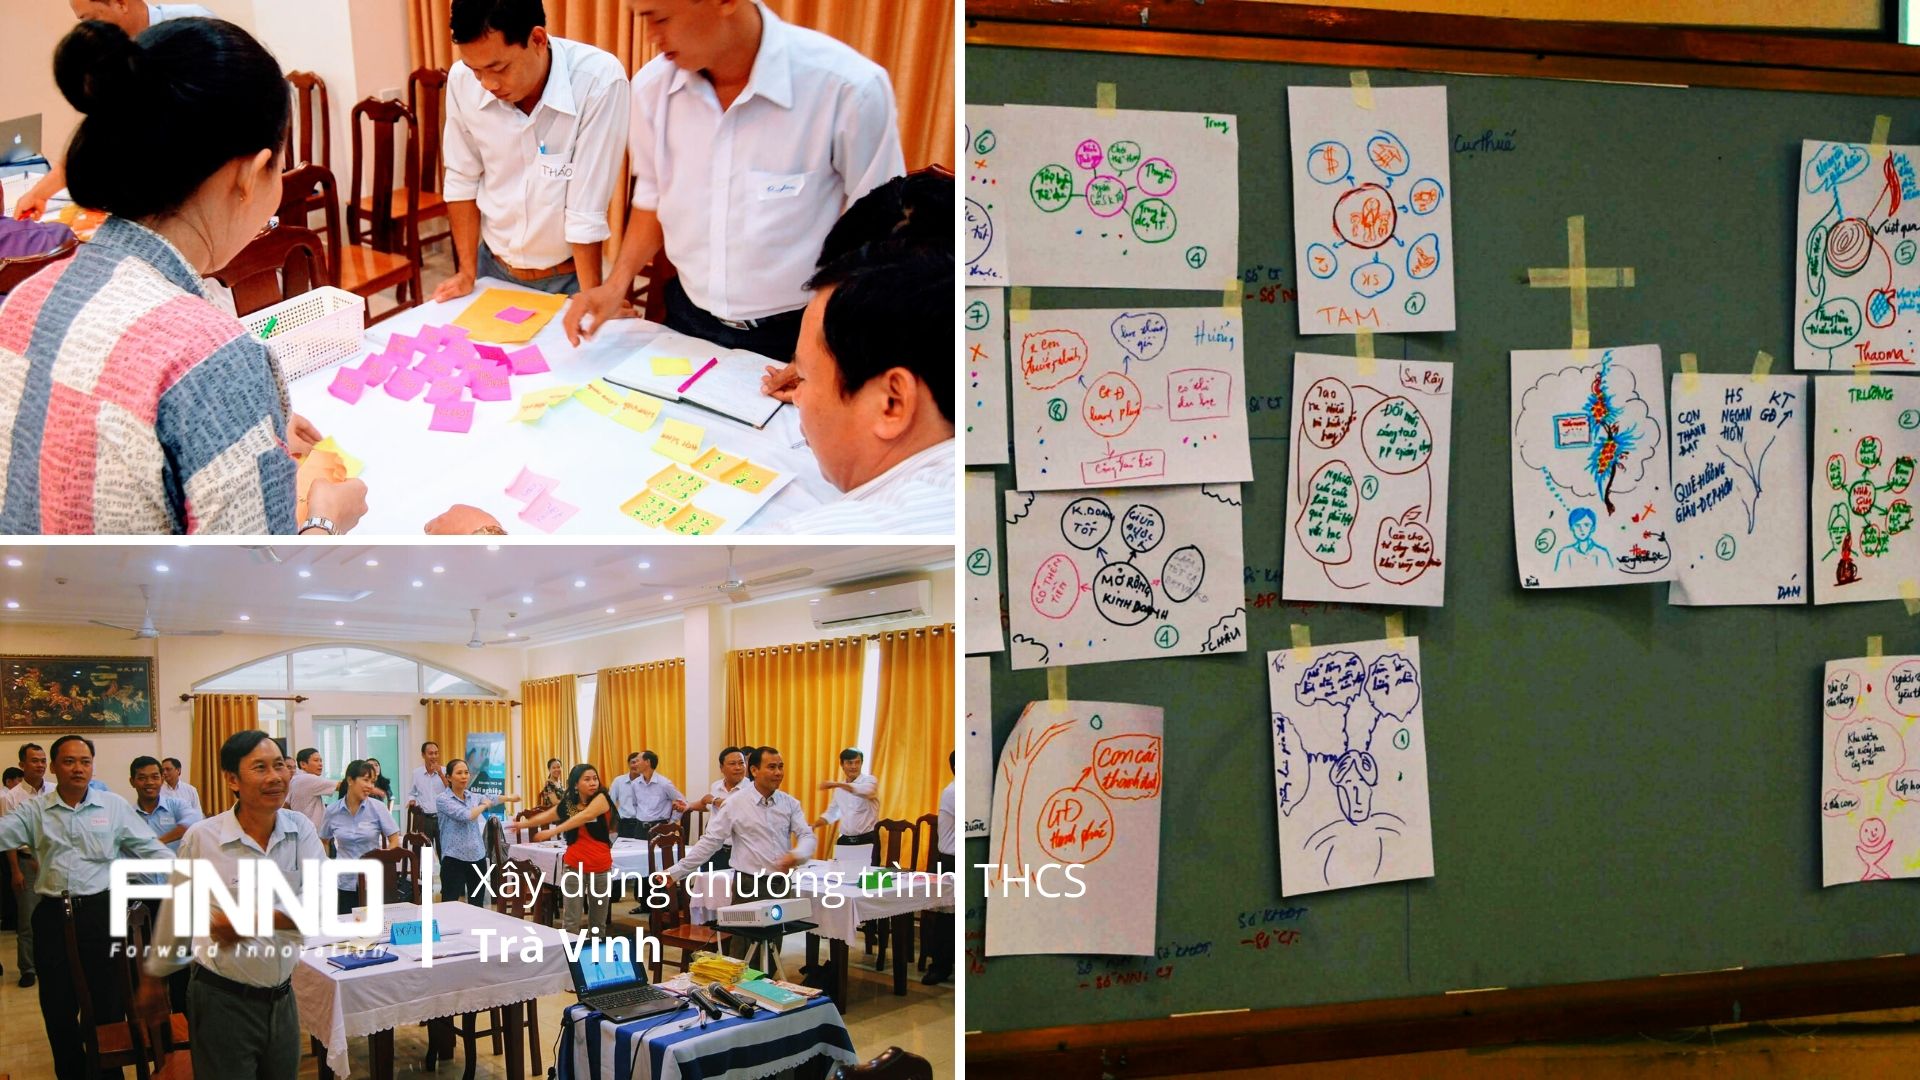 2. Tập huấn ToT cho các Giáo viên THCS trong tỉnh Trà Vinh